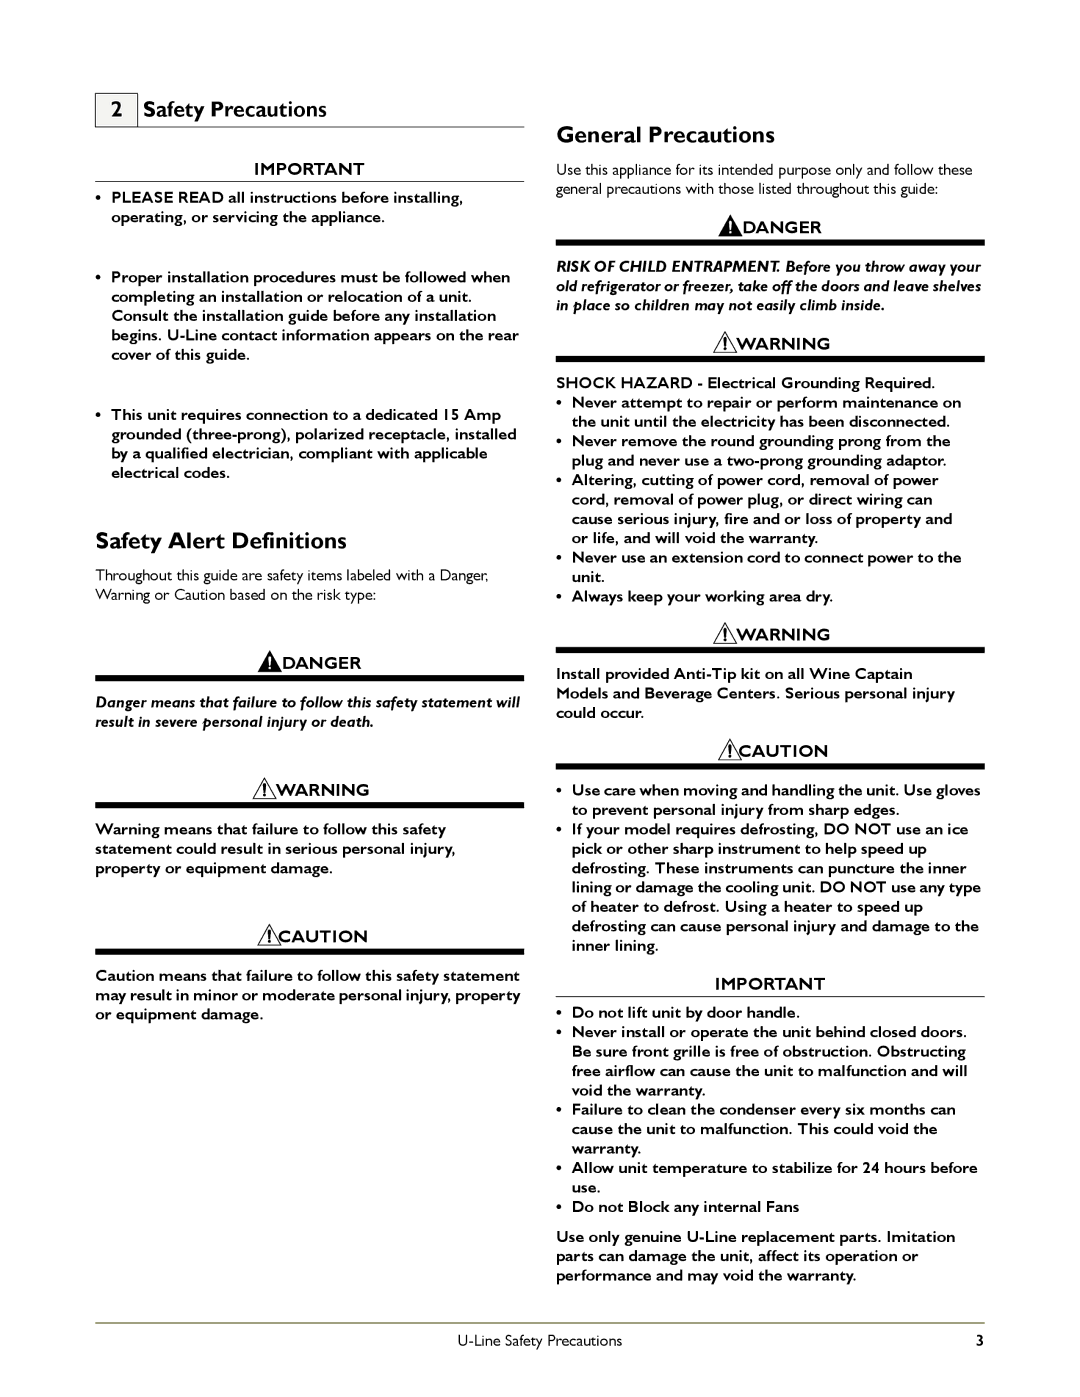 U-Line 2175RF, CO2175FF, C2275DWR manual Safety Alert Definitions, General Precautions 